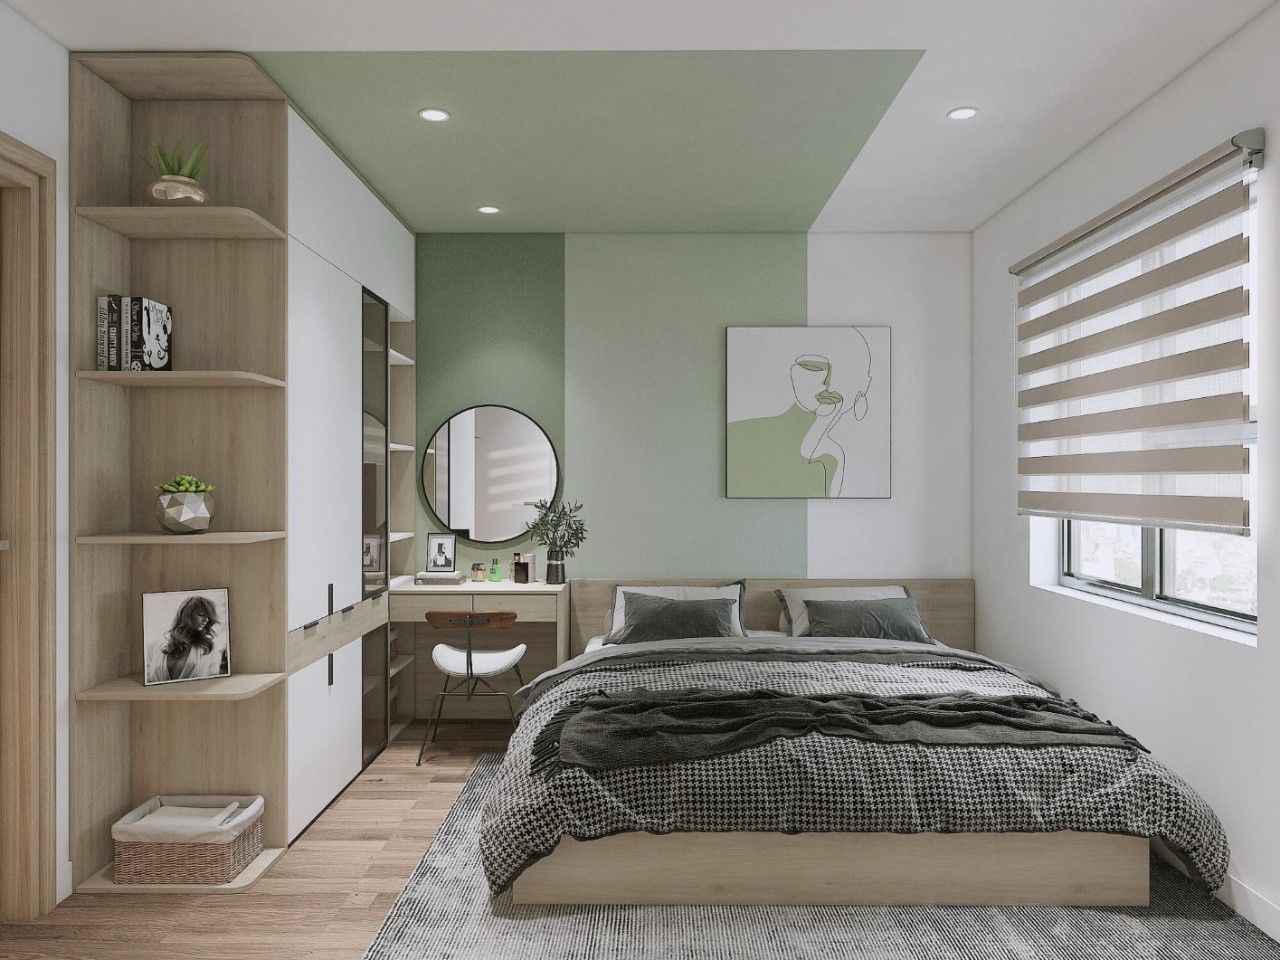 Không gian phòng ngủ tông trắng - xanh kết hợp với các món nội thất từ gỗ MDF